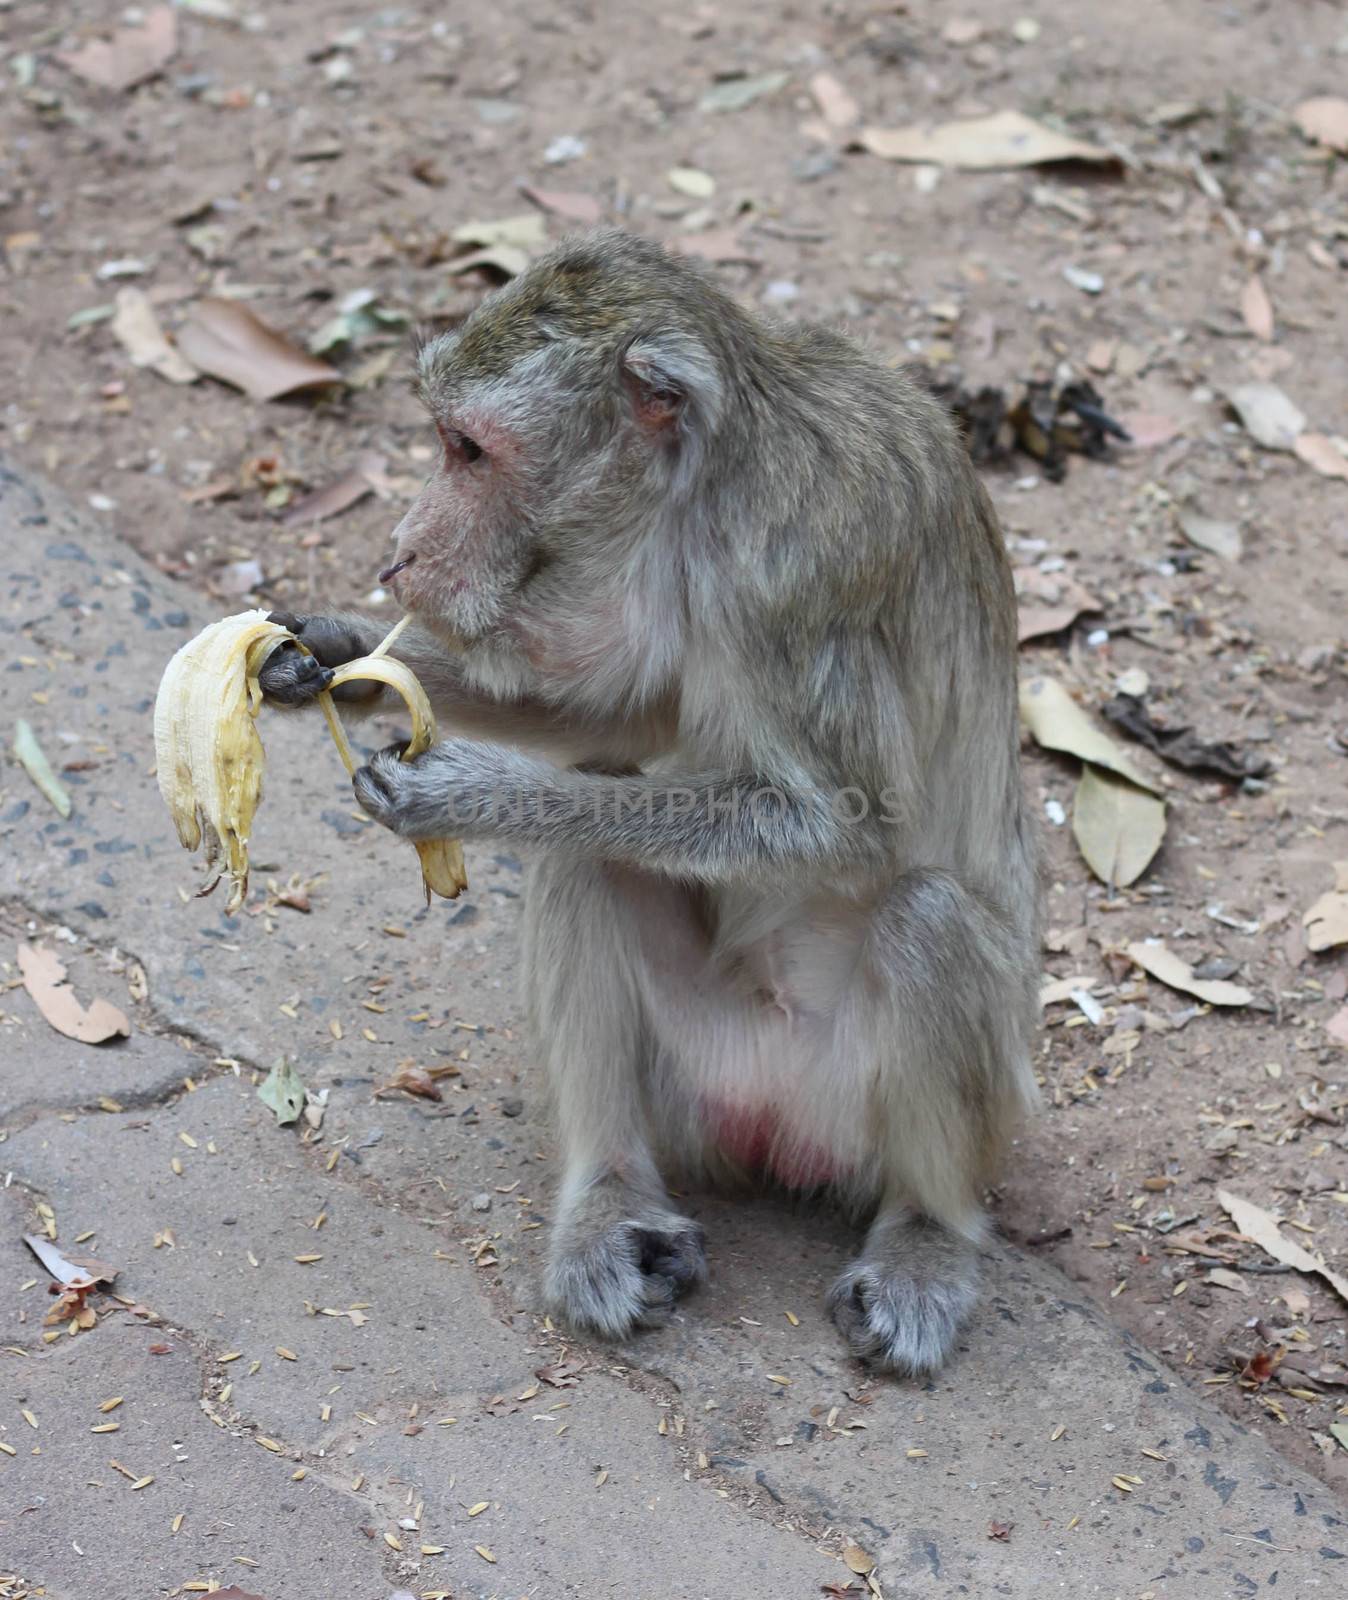 monkeys eat bananas by primzrider